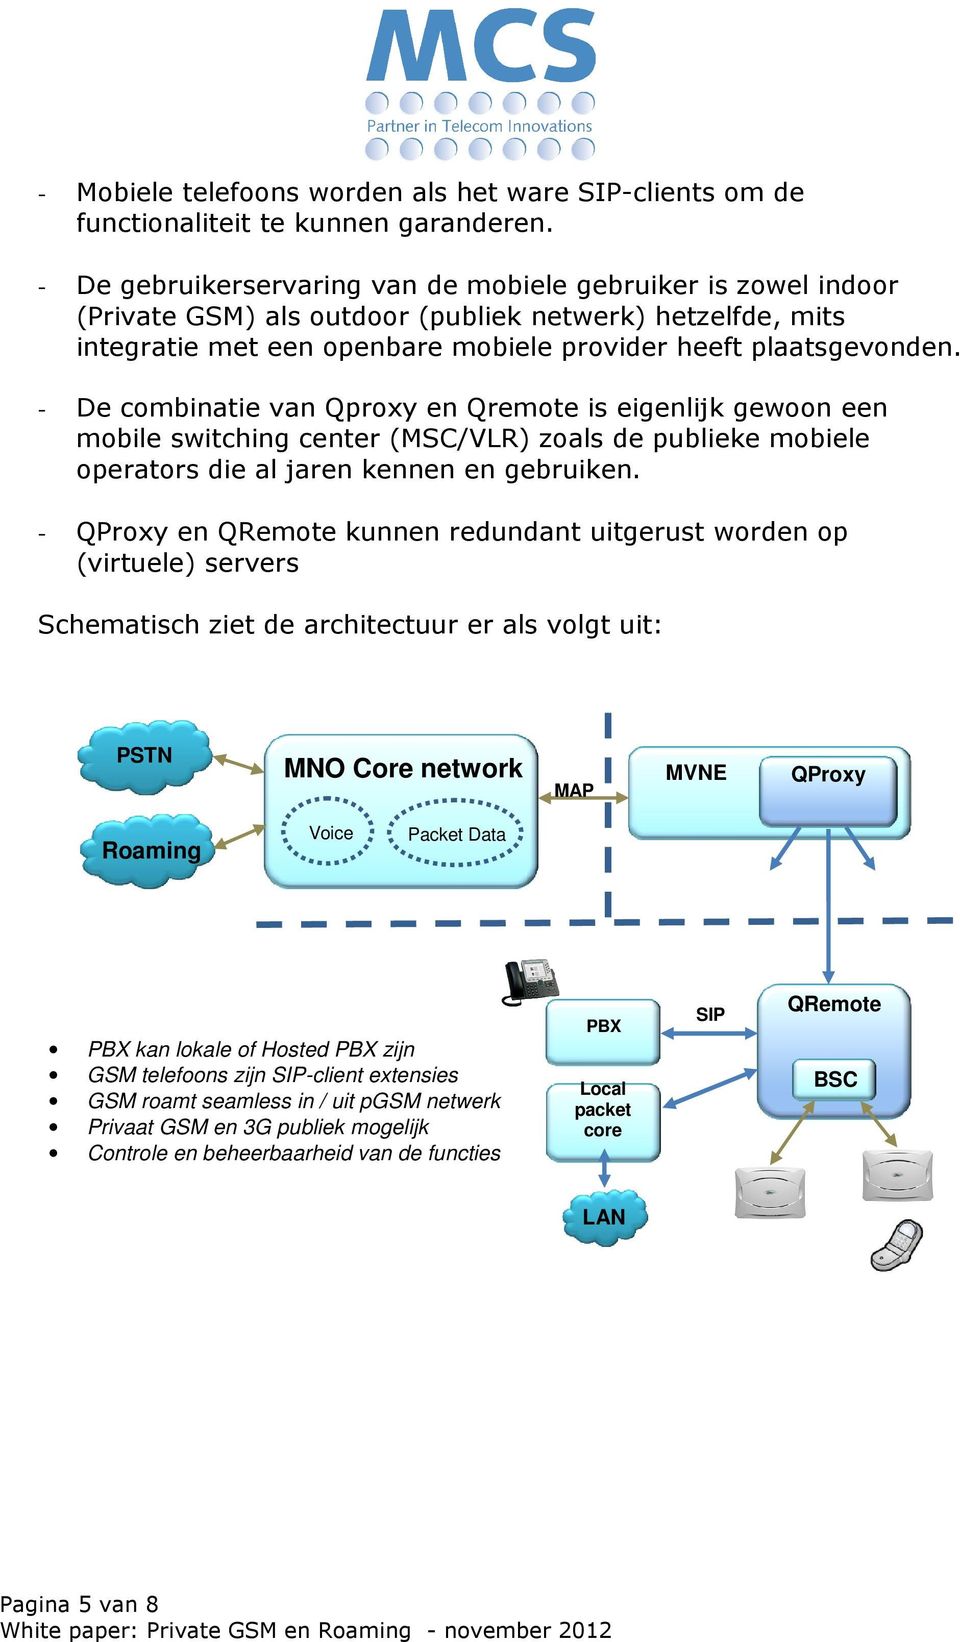 - De combinatie van Qproxy en Qremote is eigenlijk gewoon een mobile switching center (MSC/VLR) zoals de publieke mobiele operators die al jaren kennen en gebruiken.